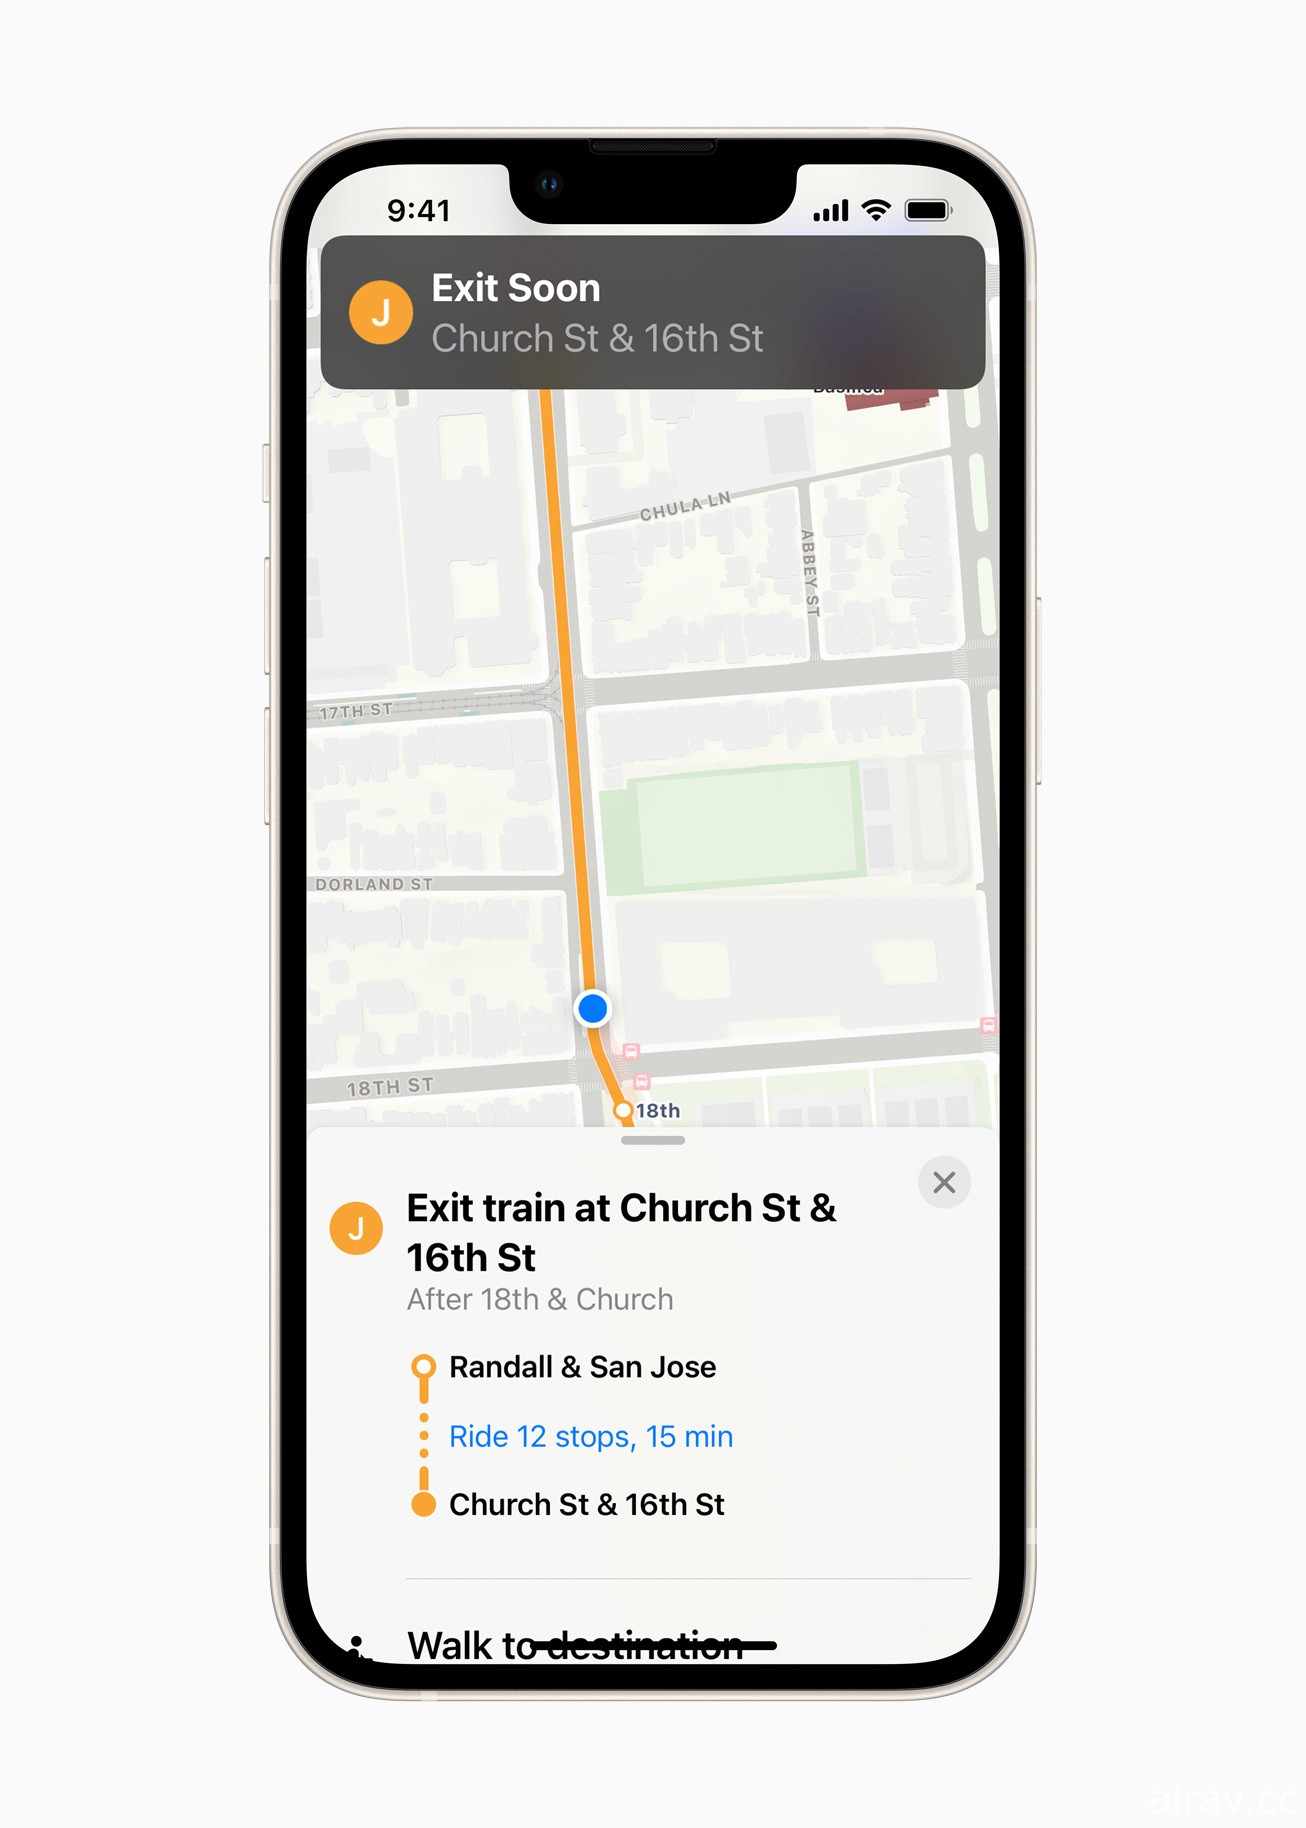 蘋果宣布推出 iOS 15 加入「原況文字」、重新設計的通知及地圖聲及體驗等功能